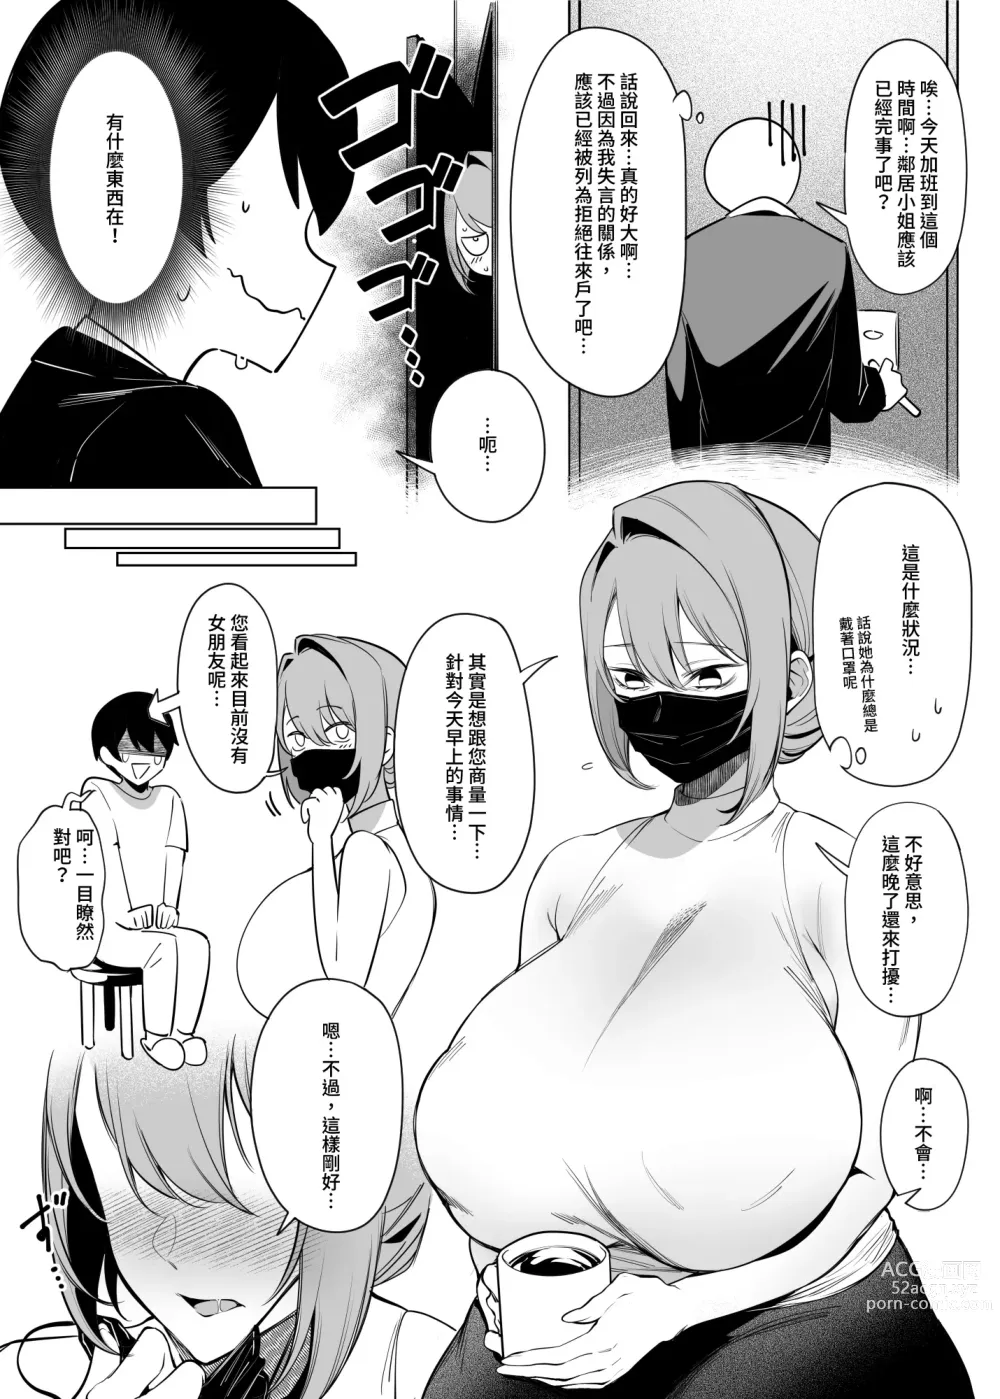 Page 7 of doujinshi comic